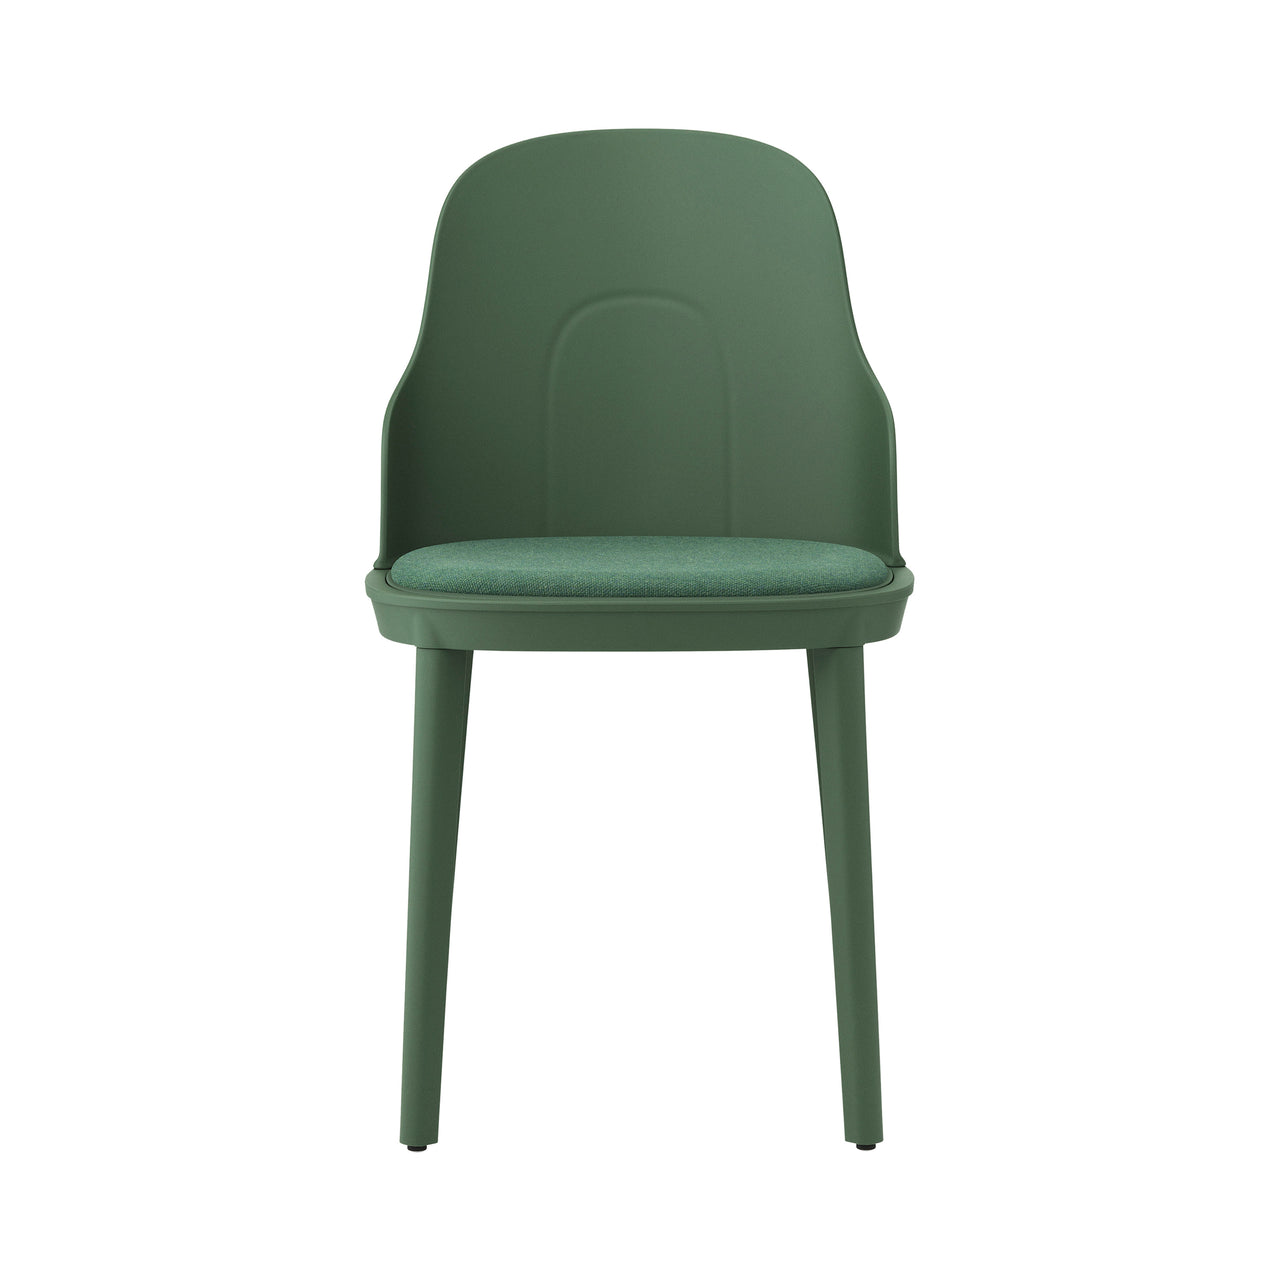 Allez Chair: Upholstered + Park Green + Polypropylene